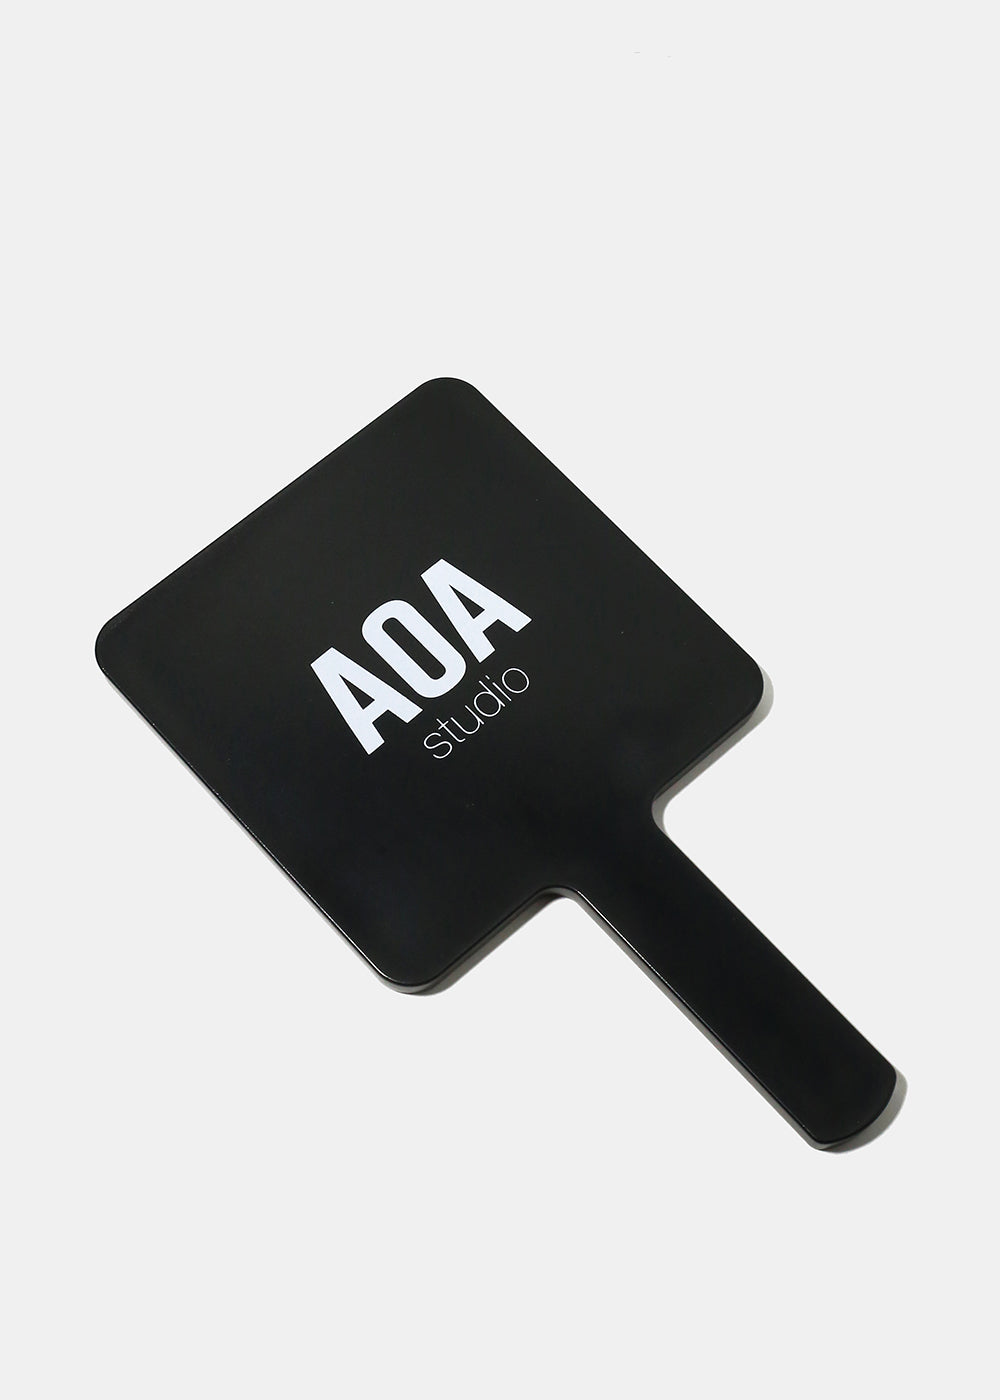 AOA Essential Oils + Diffuser Kit - Calm – Shop Miss A